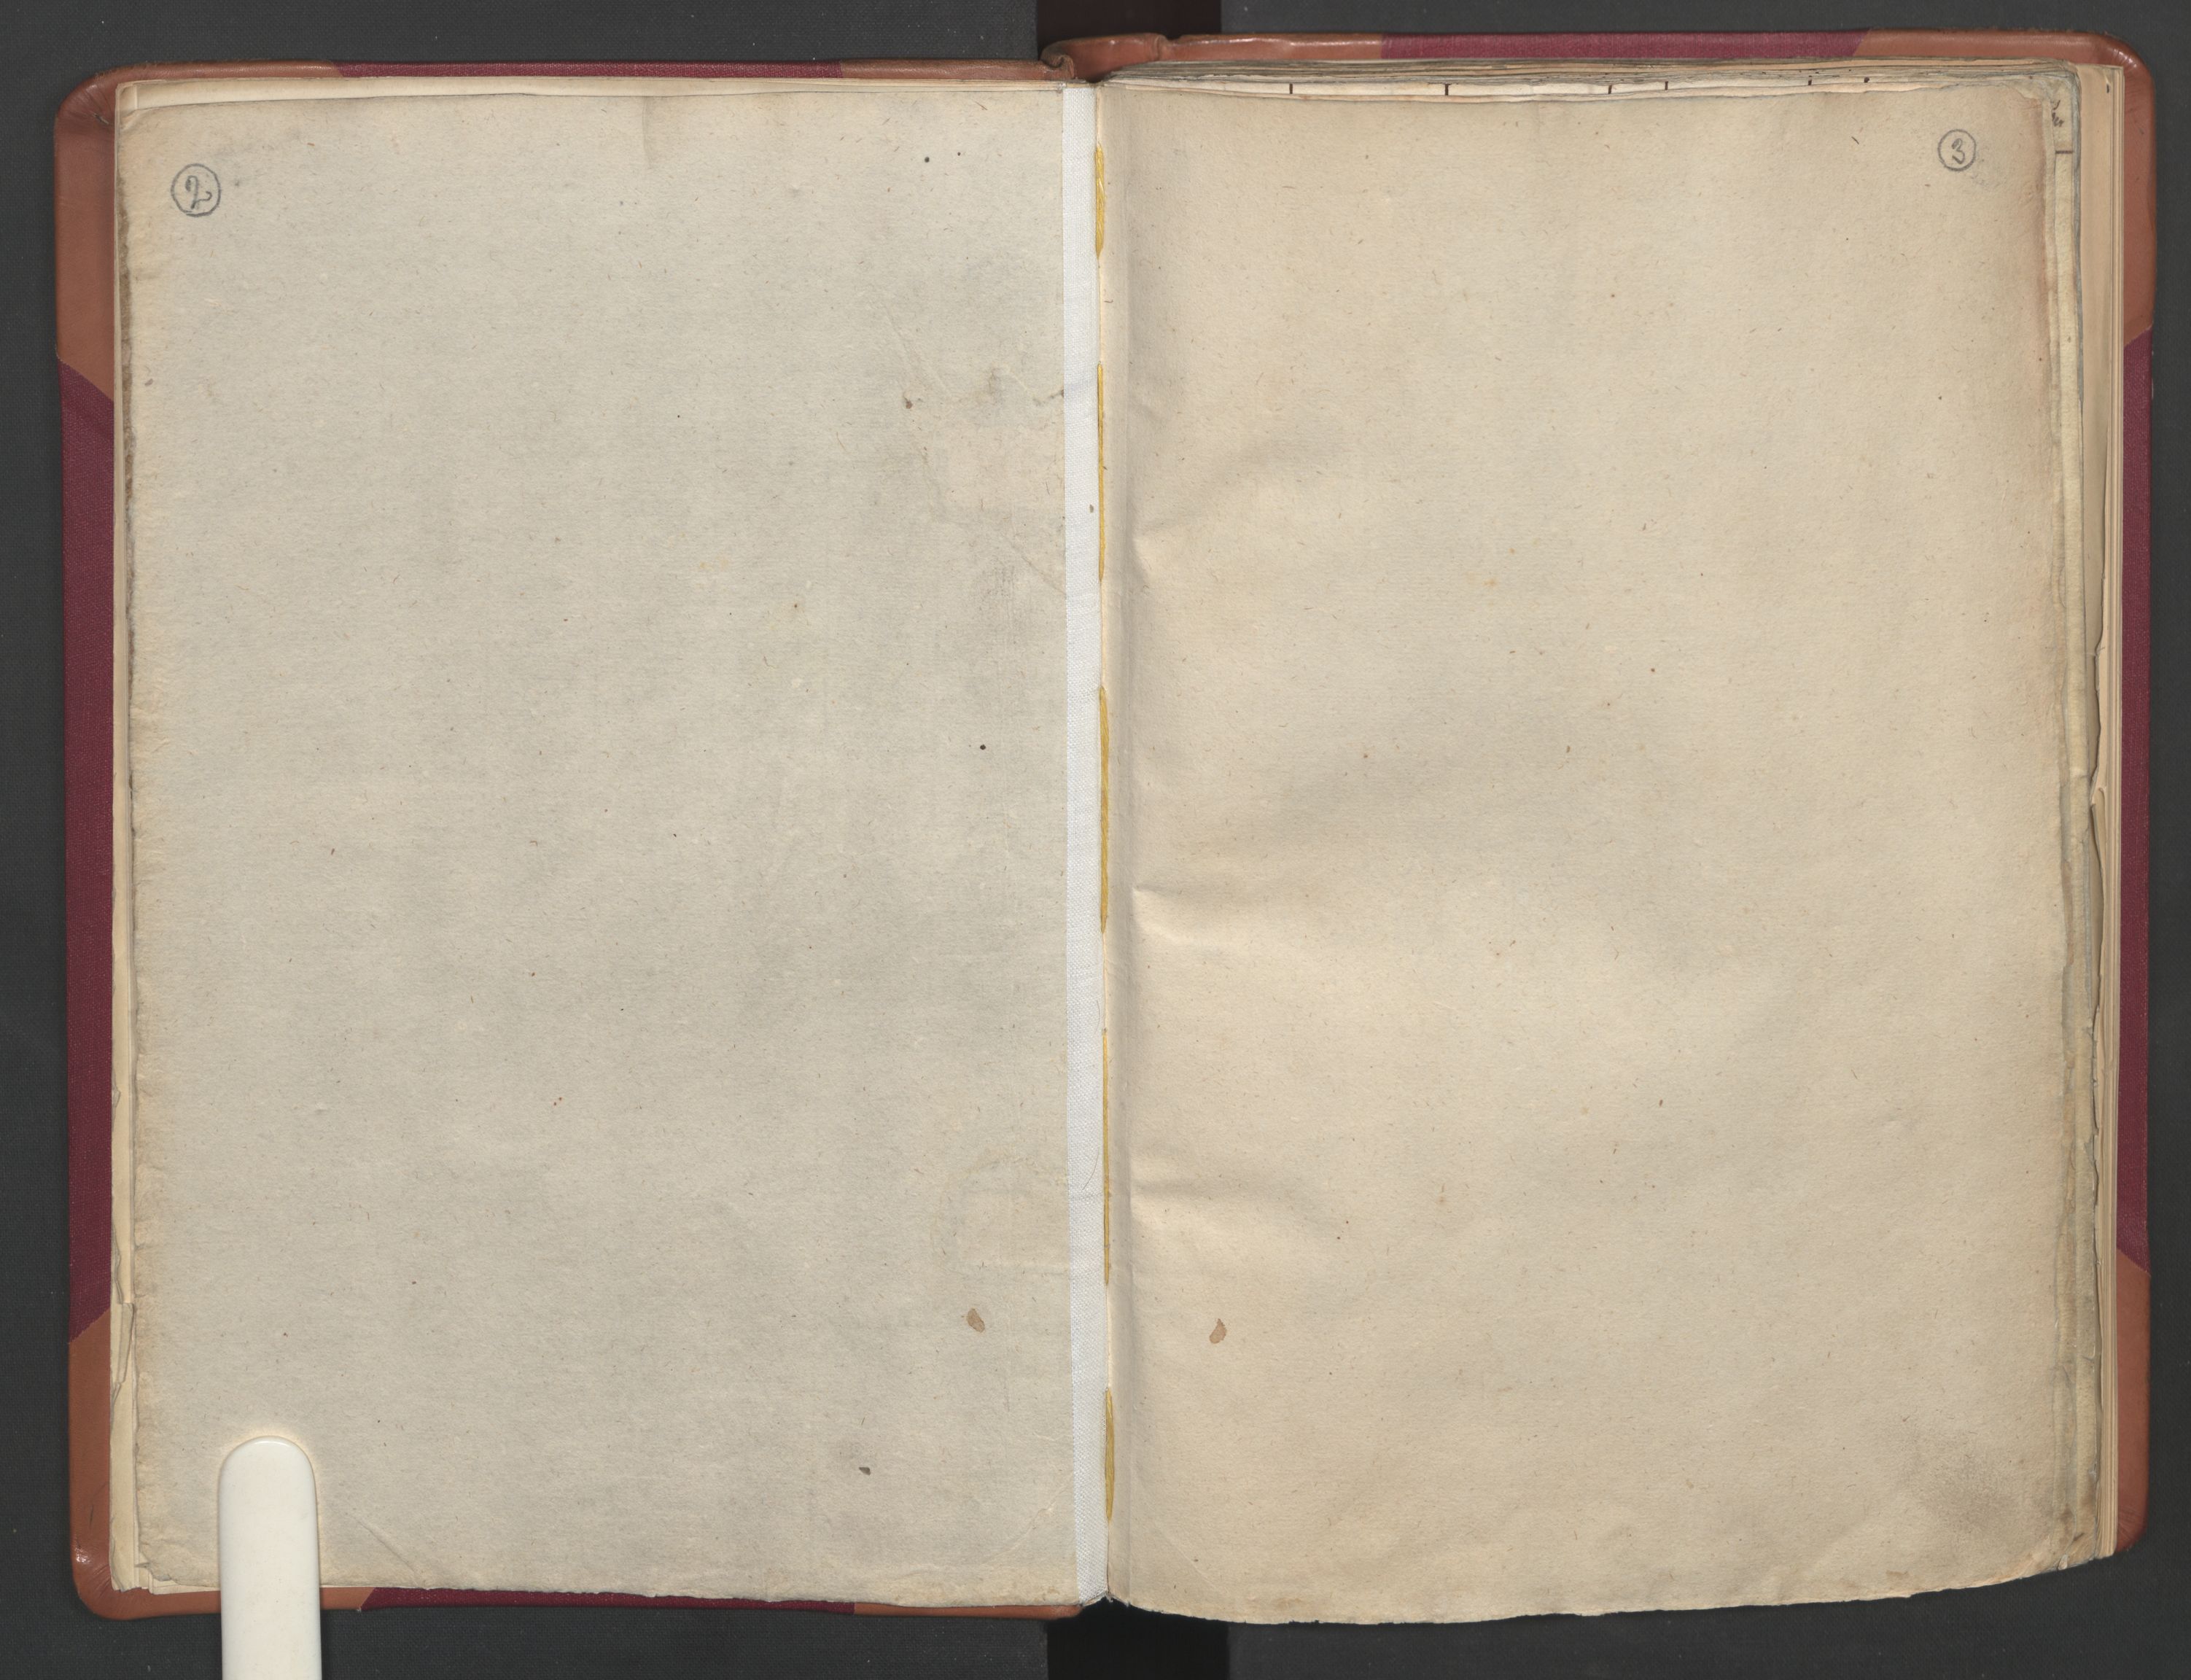 RA, Manntallet 1701, nr. 12: Fosen fogderi, 1701, s. 2-3